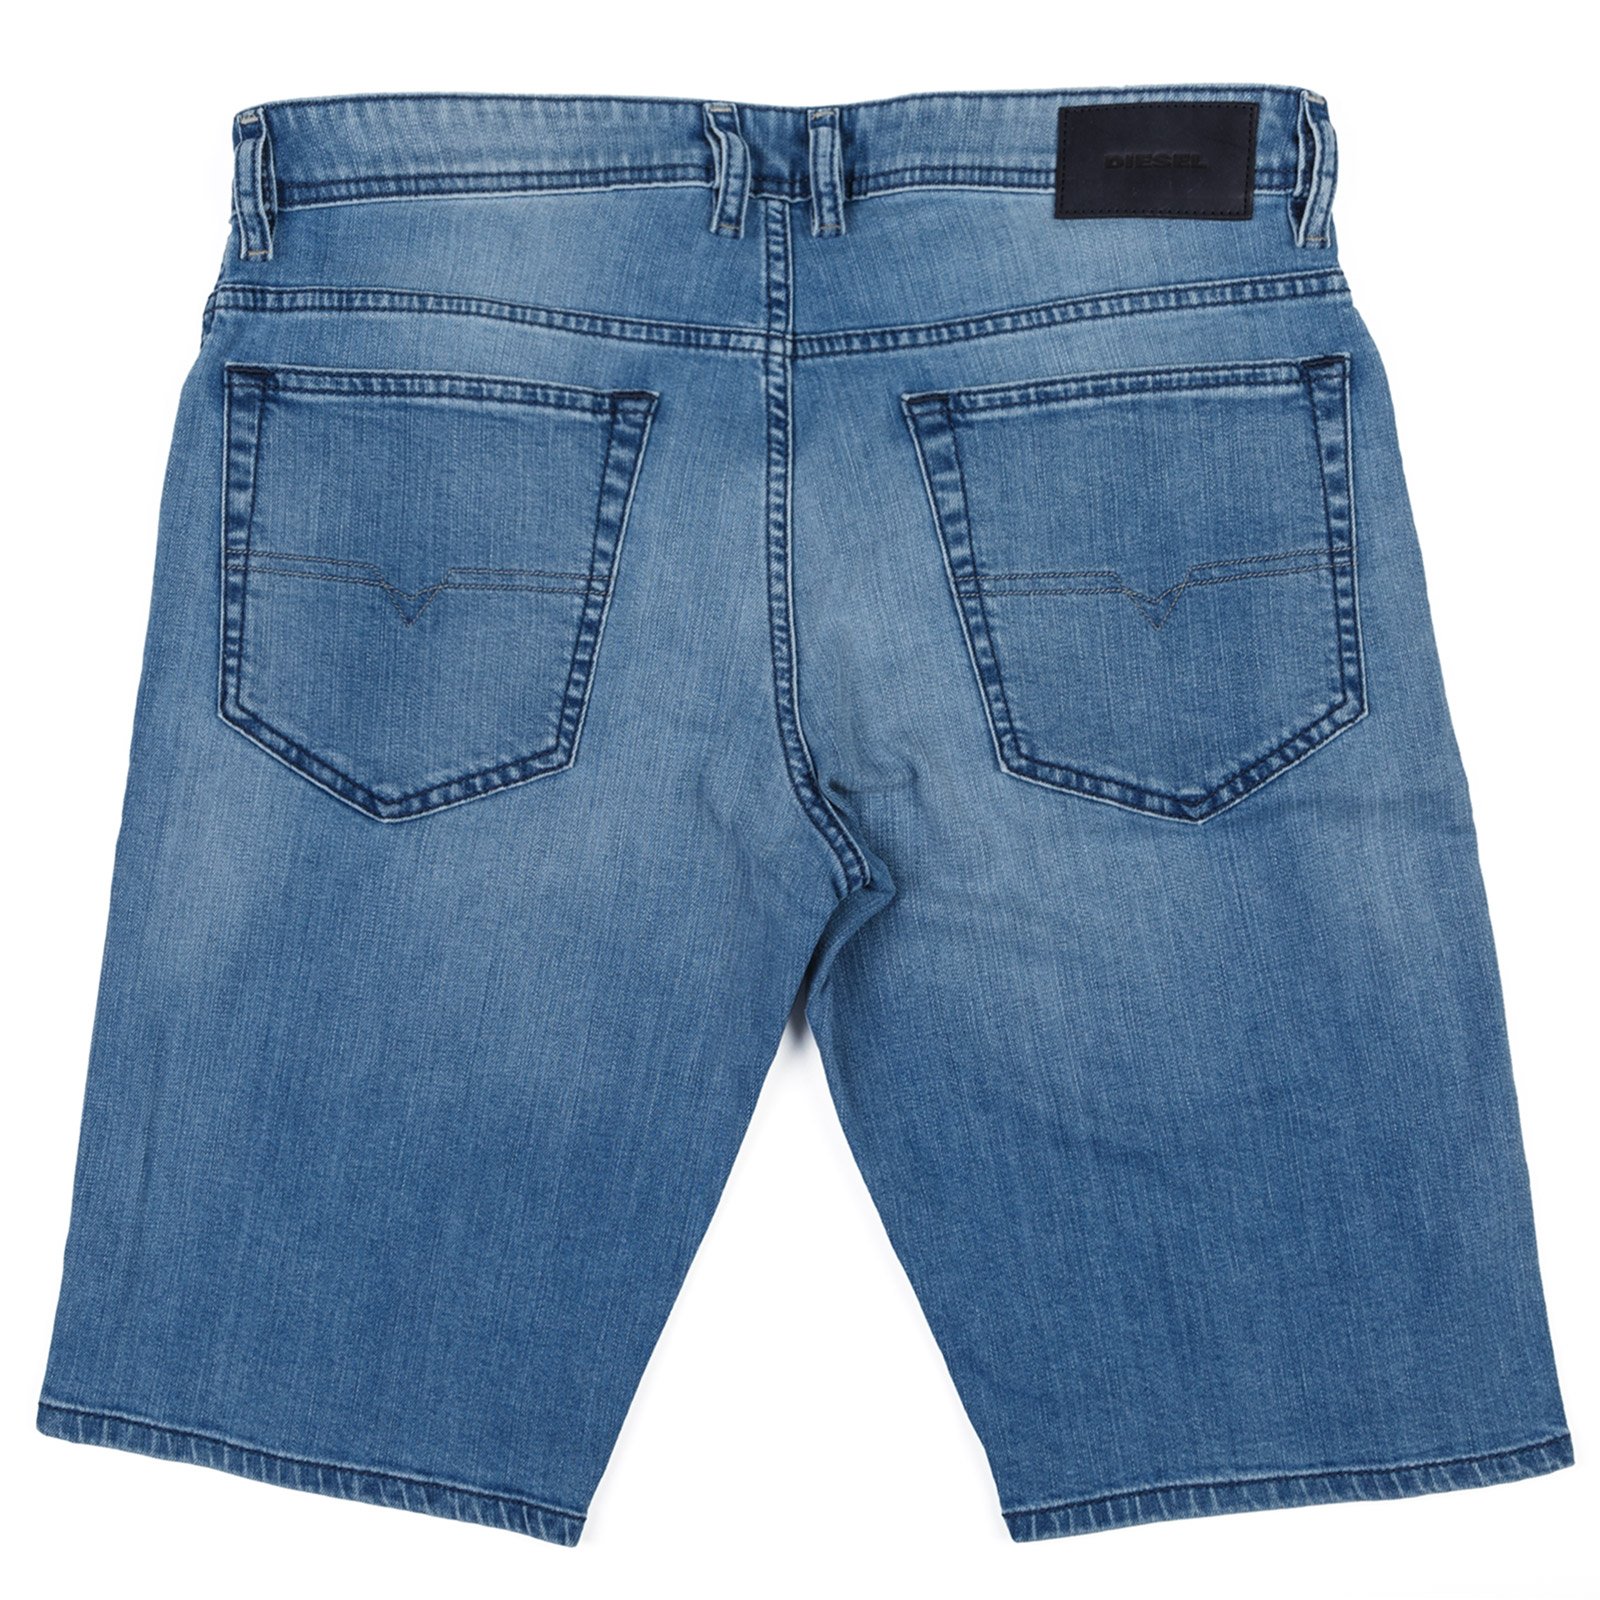 Thoshort Regular Slim Fit Stretch Denim Shorts - Shorts : FA2 Online ...